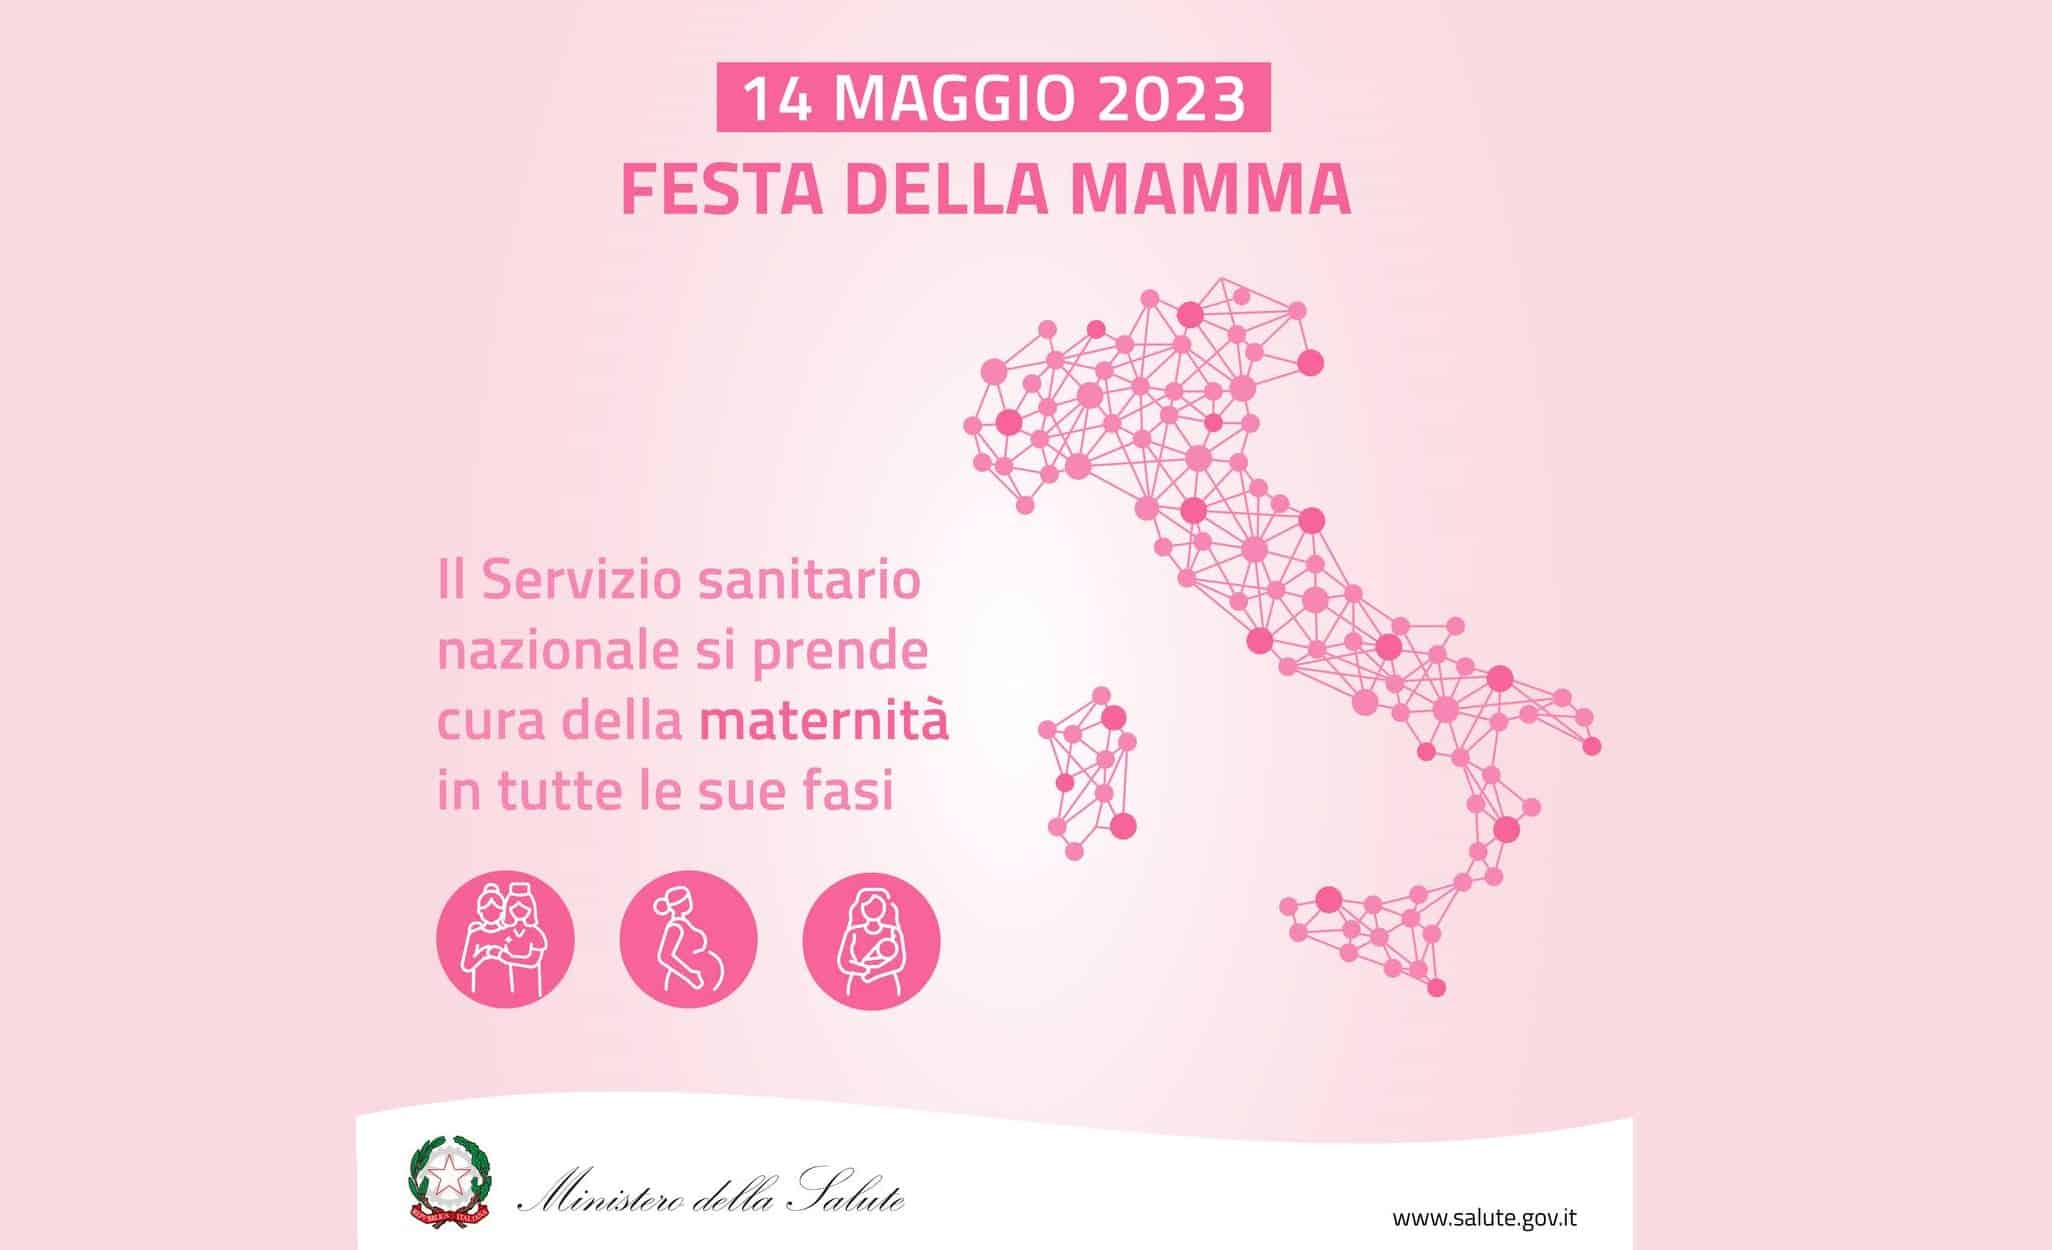 Fitta rete di consultori a tutela della maternità: l’elenco completo in Sicilia